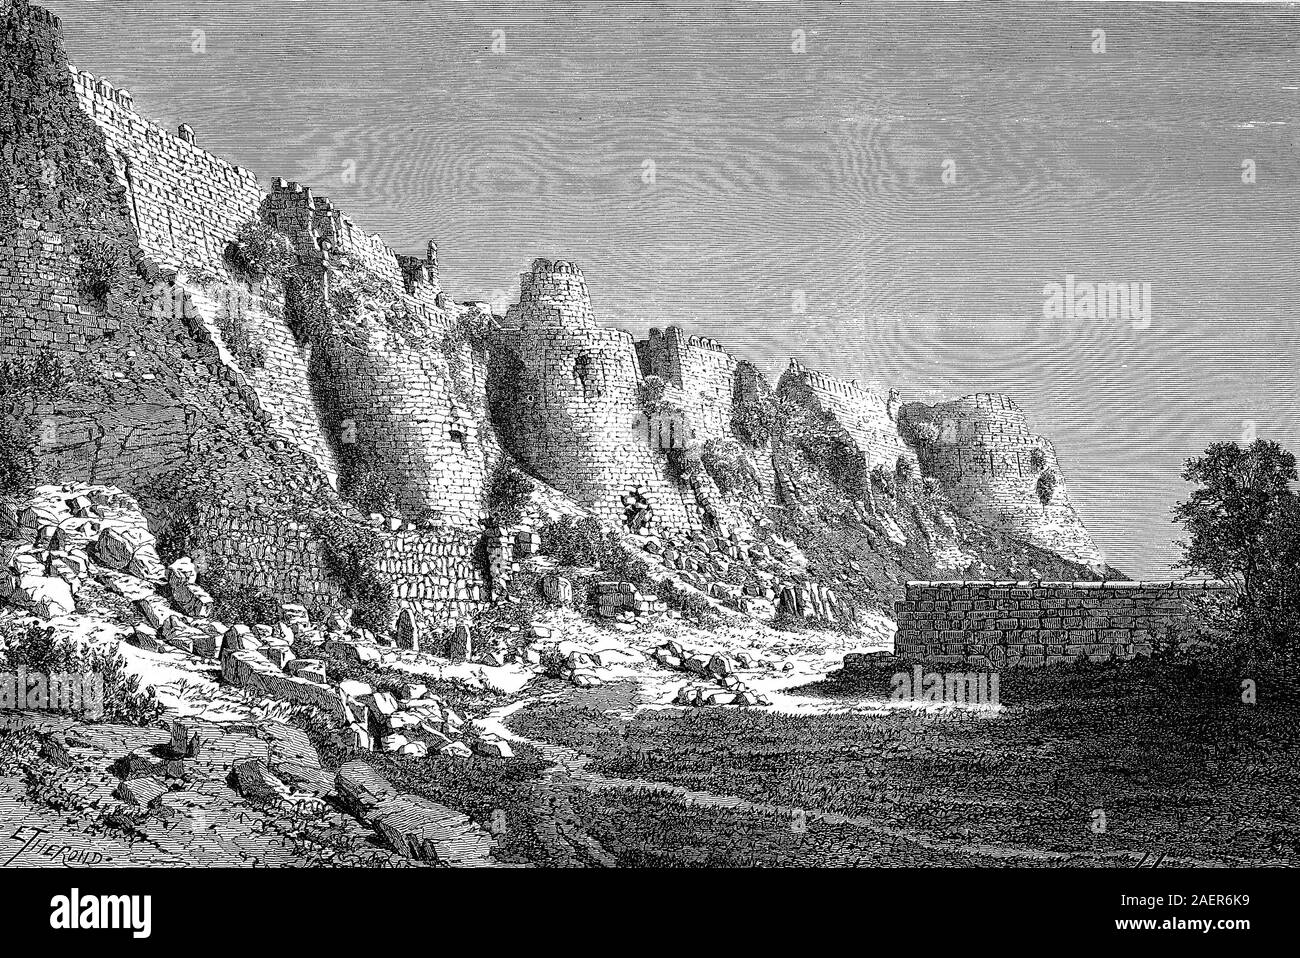 Ruinen von Tughlaqabad Fort, tughlaqabad ist ein historisch und kulturell bedeutenden Bezirk im Südosten der indischen Hauptstadt Delhi, Indien / Ruinen des Tughlaqabad-Fort, tughlaqabad ist ein historisch und kulturell bedeutsamer Stadtteil im Südwest der indischen Hauptstadt Delhi, Indien, Reproduktion eines original 19. Jahrhundert drucken/Reproduktion von einems Originaldruck aus dem 19. Jahrhundert Stockfoto